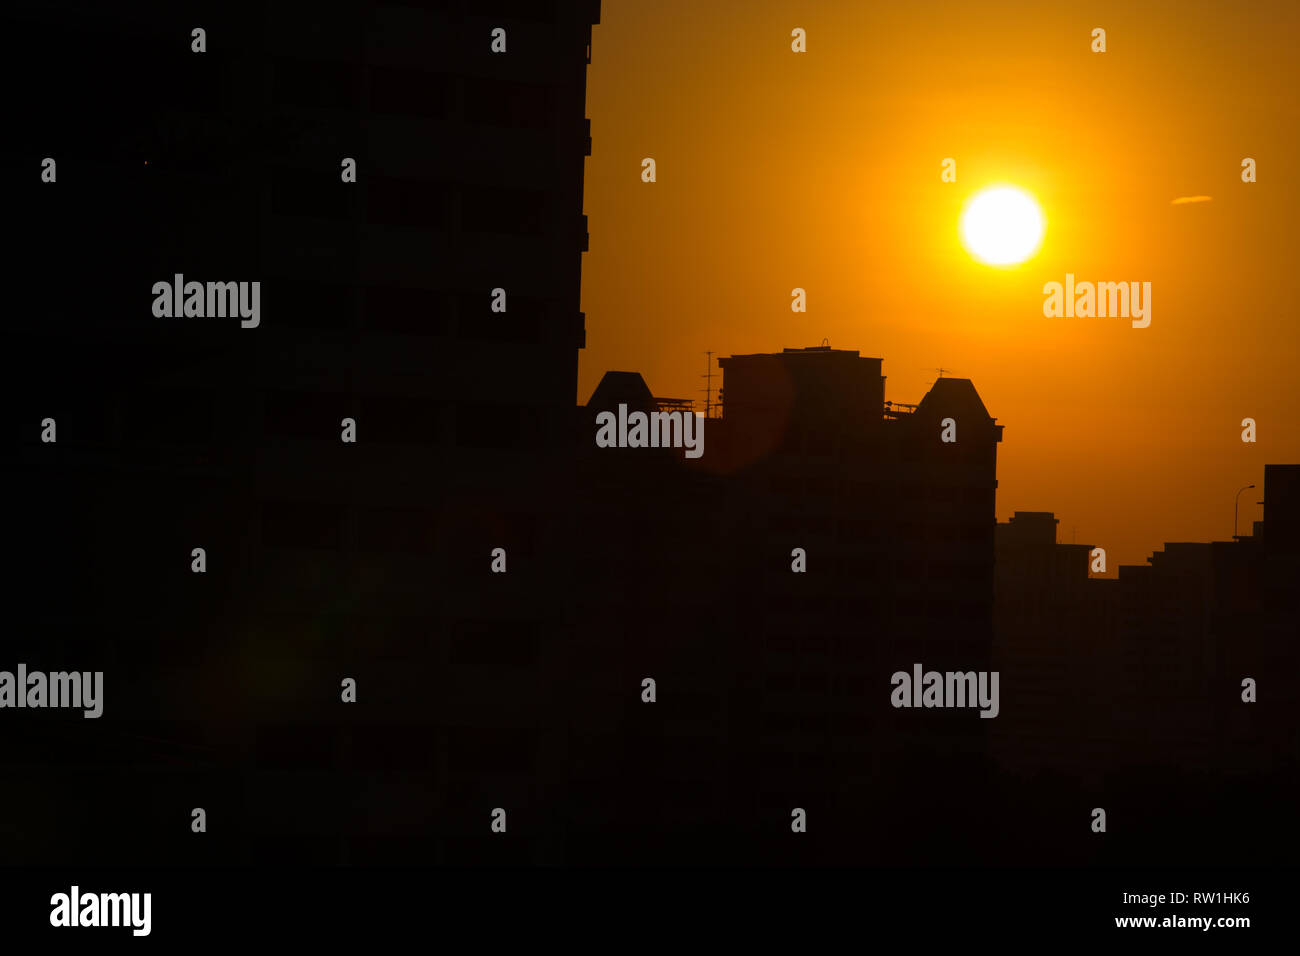 Eine Zeit der Selbstreflexion beim Betrachten des Sonnenuntergangs nach einem Tag harter Arbeit. Singapur. Stockfoto